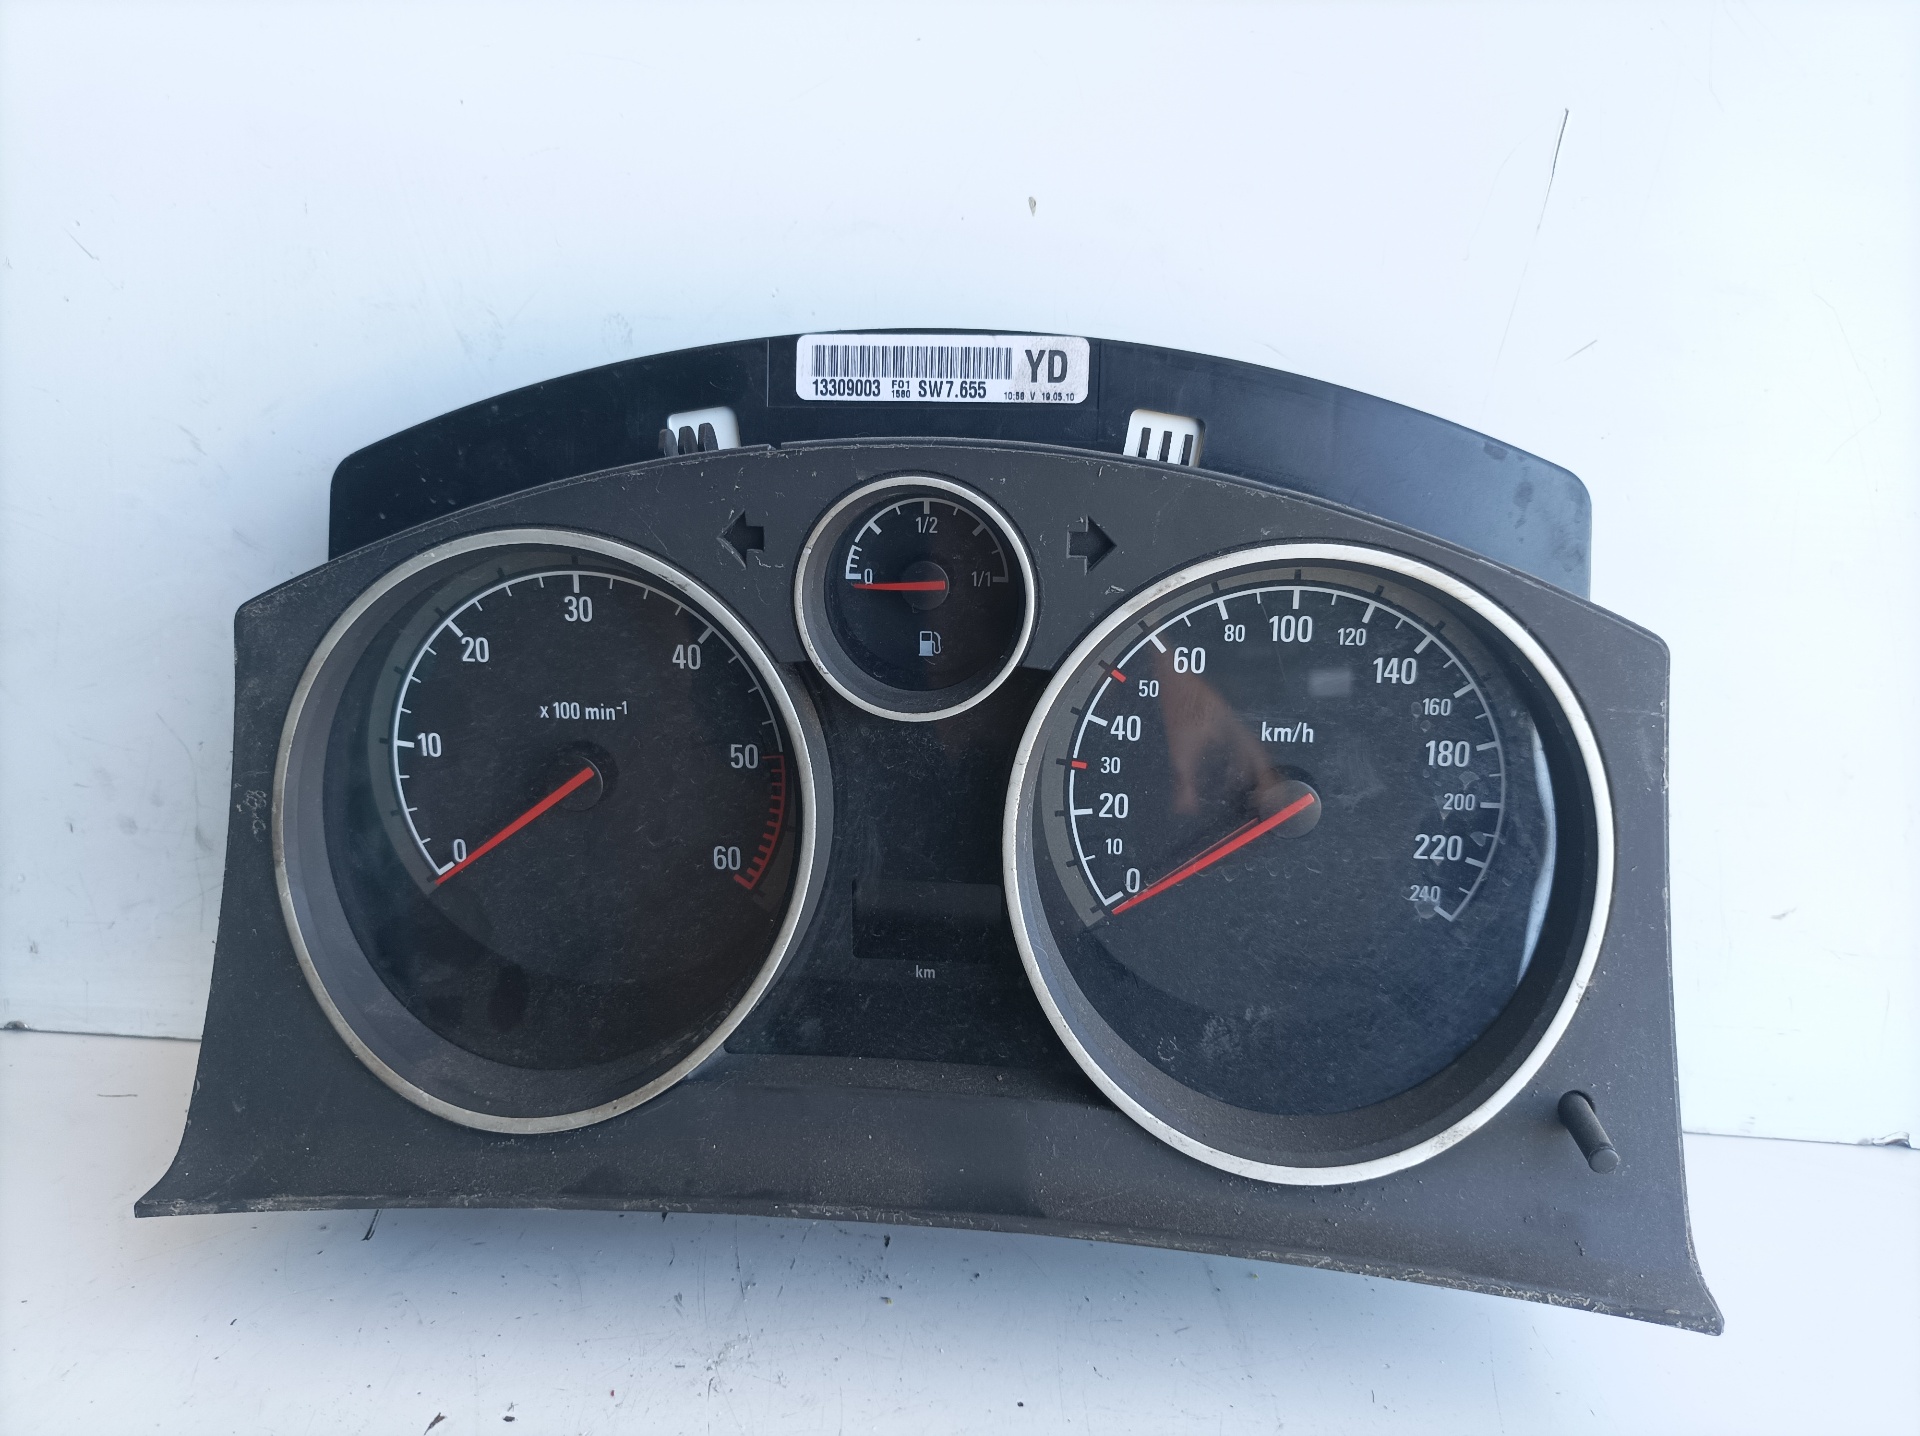 OPEL Zafira B (2005-2010) Speedometer 13309003 25084216